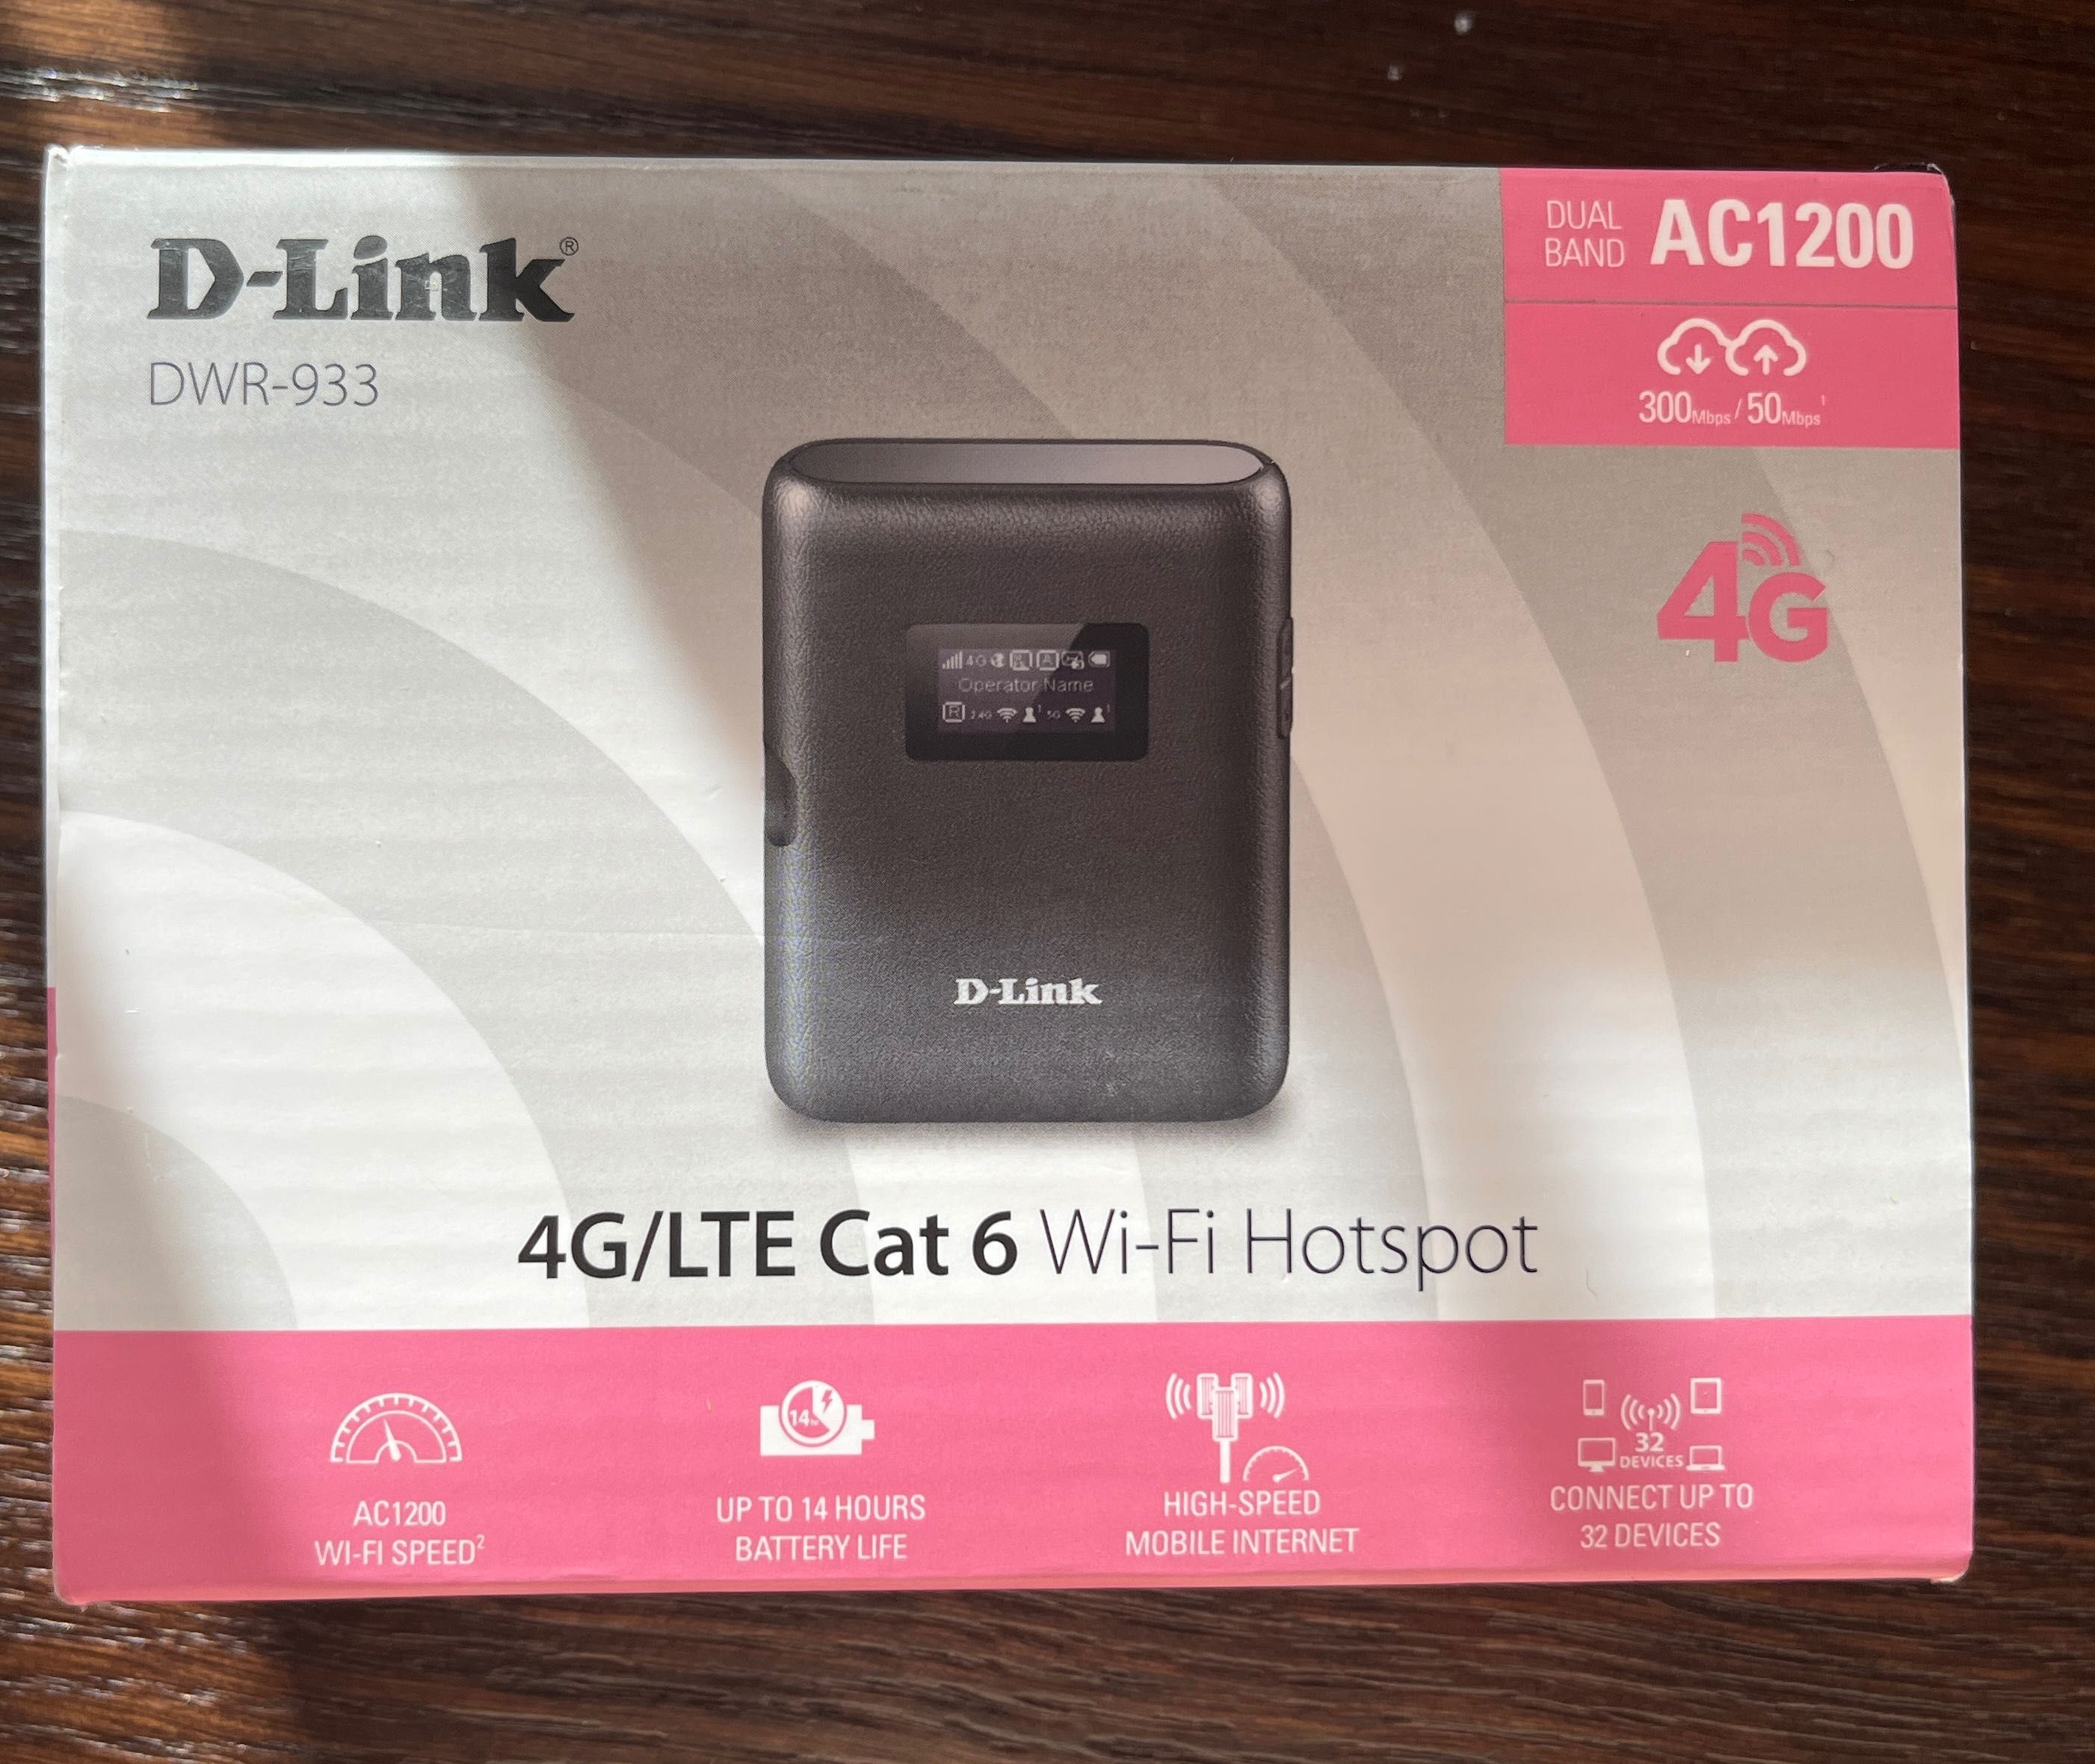 D-Link dwr-933 мобільний роутер-модем, точка доступу, LTE, 4G